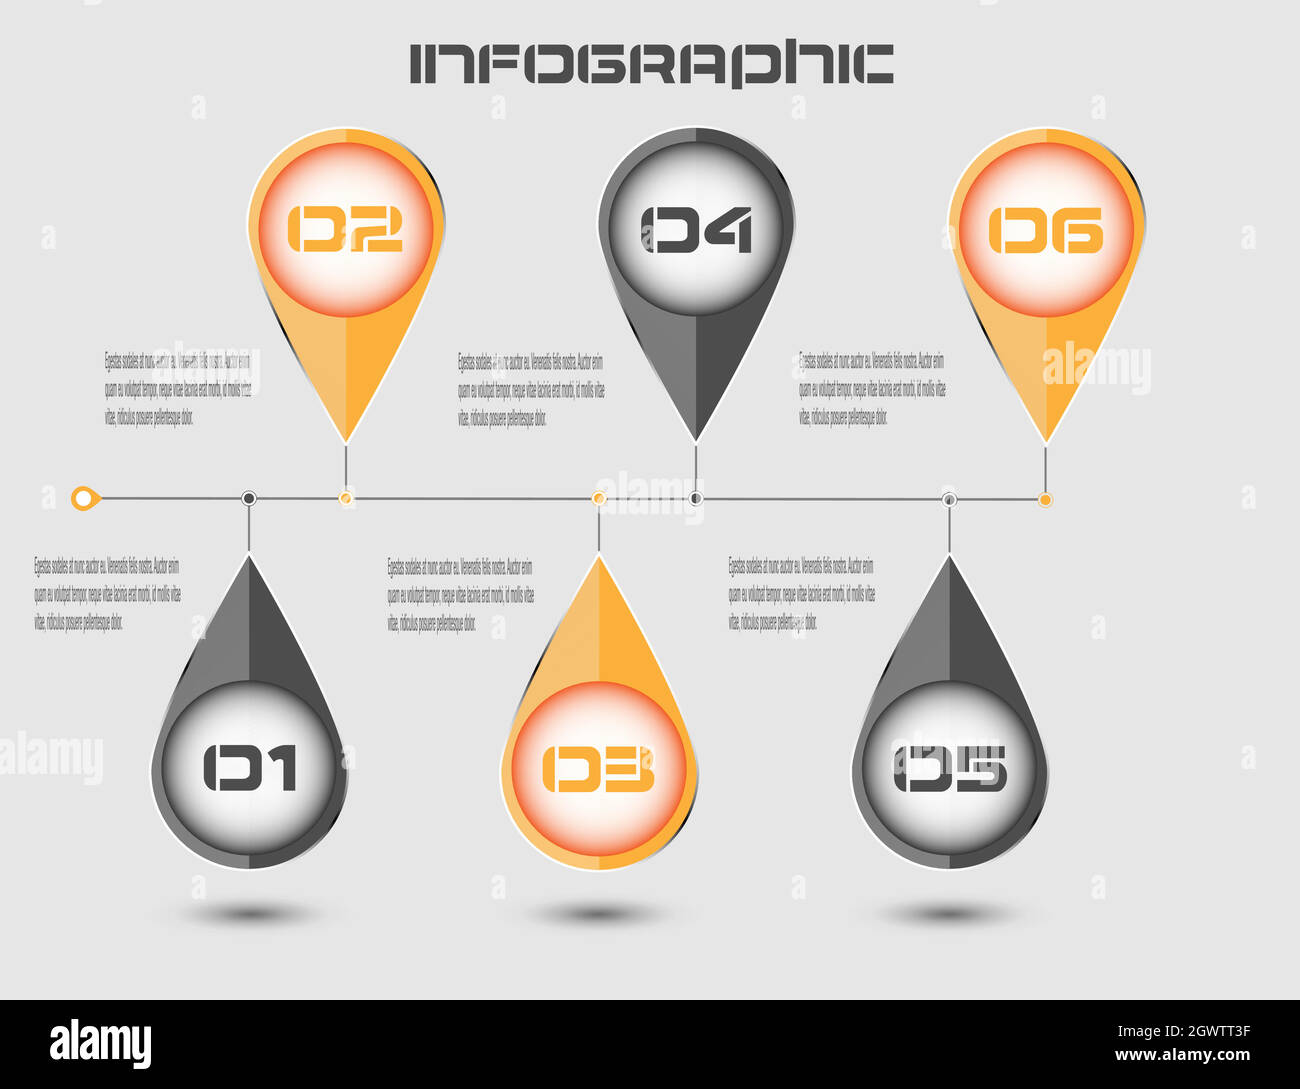 Modèle d'affichage de l'infographie. Idée d'afficher les informations, les classements et les statistiques. Illustration de Vecteur